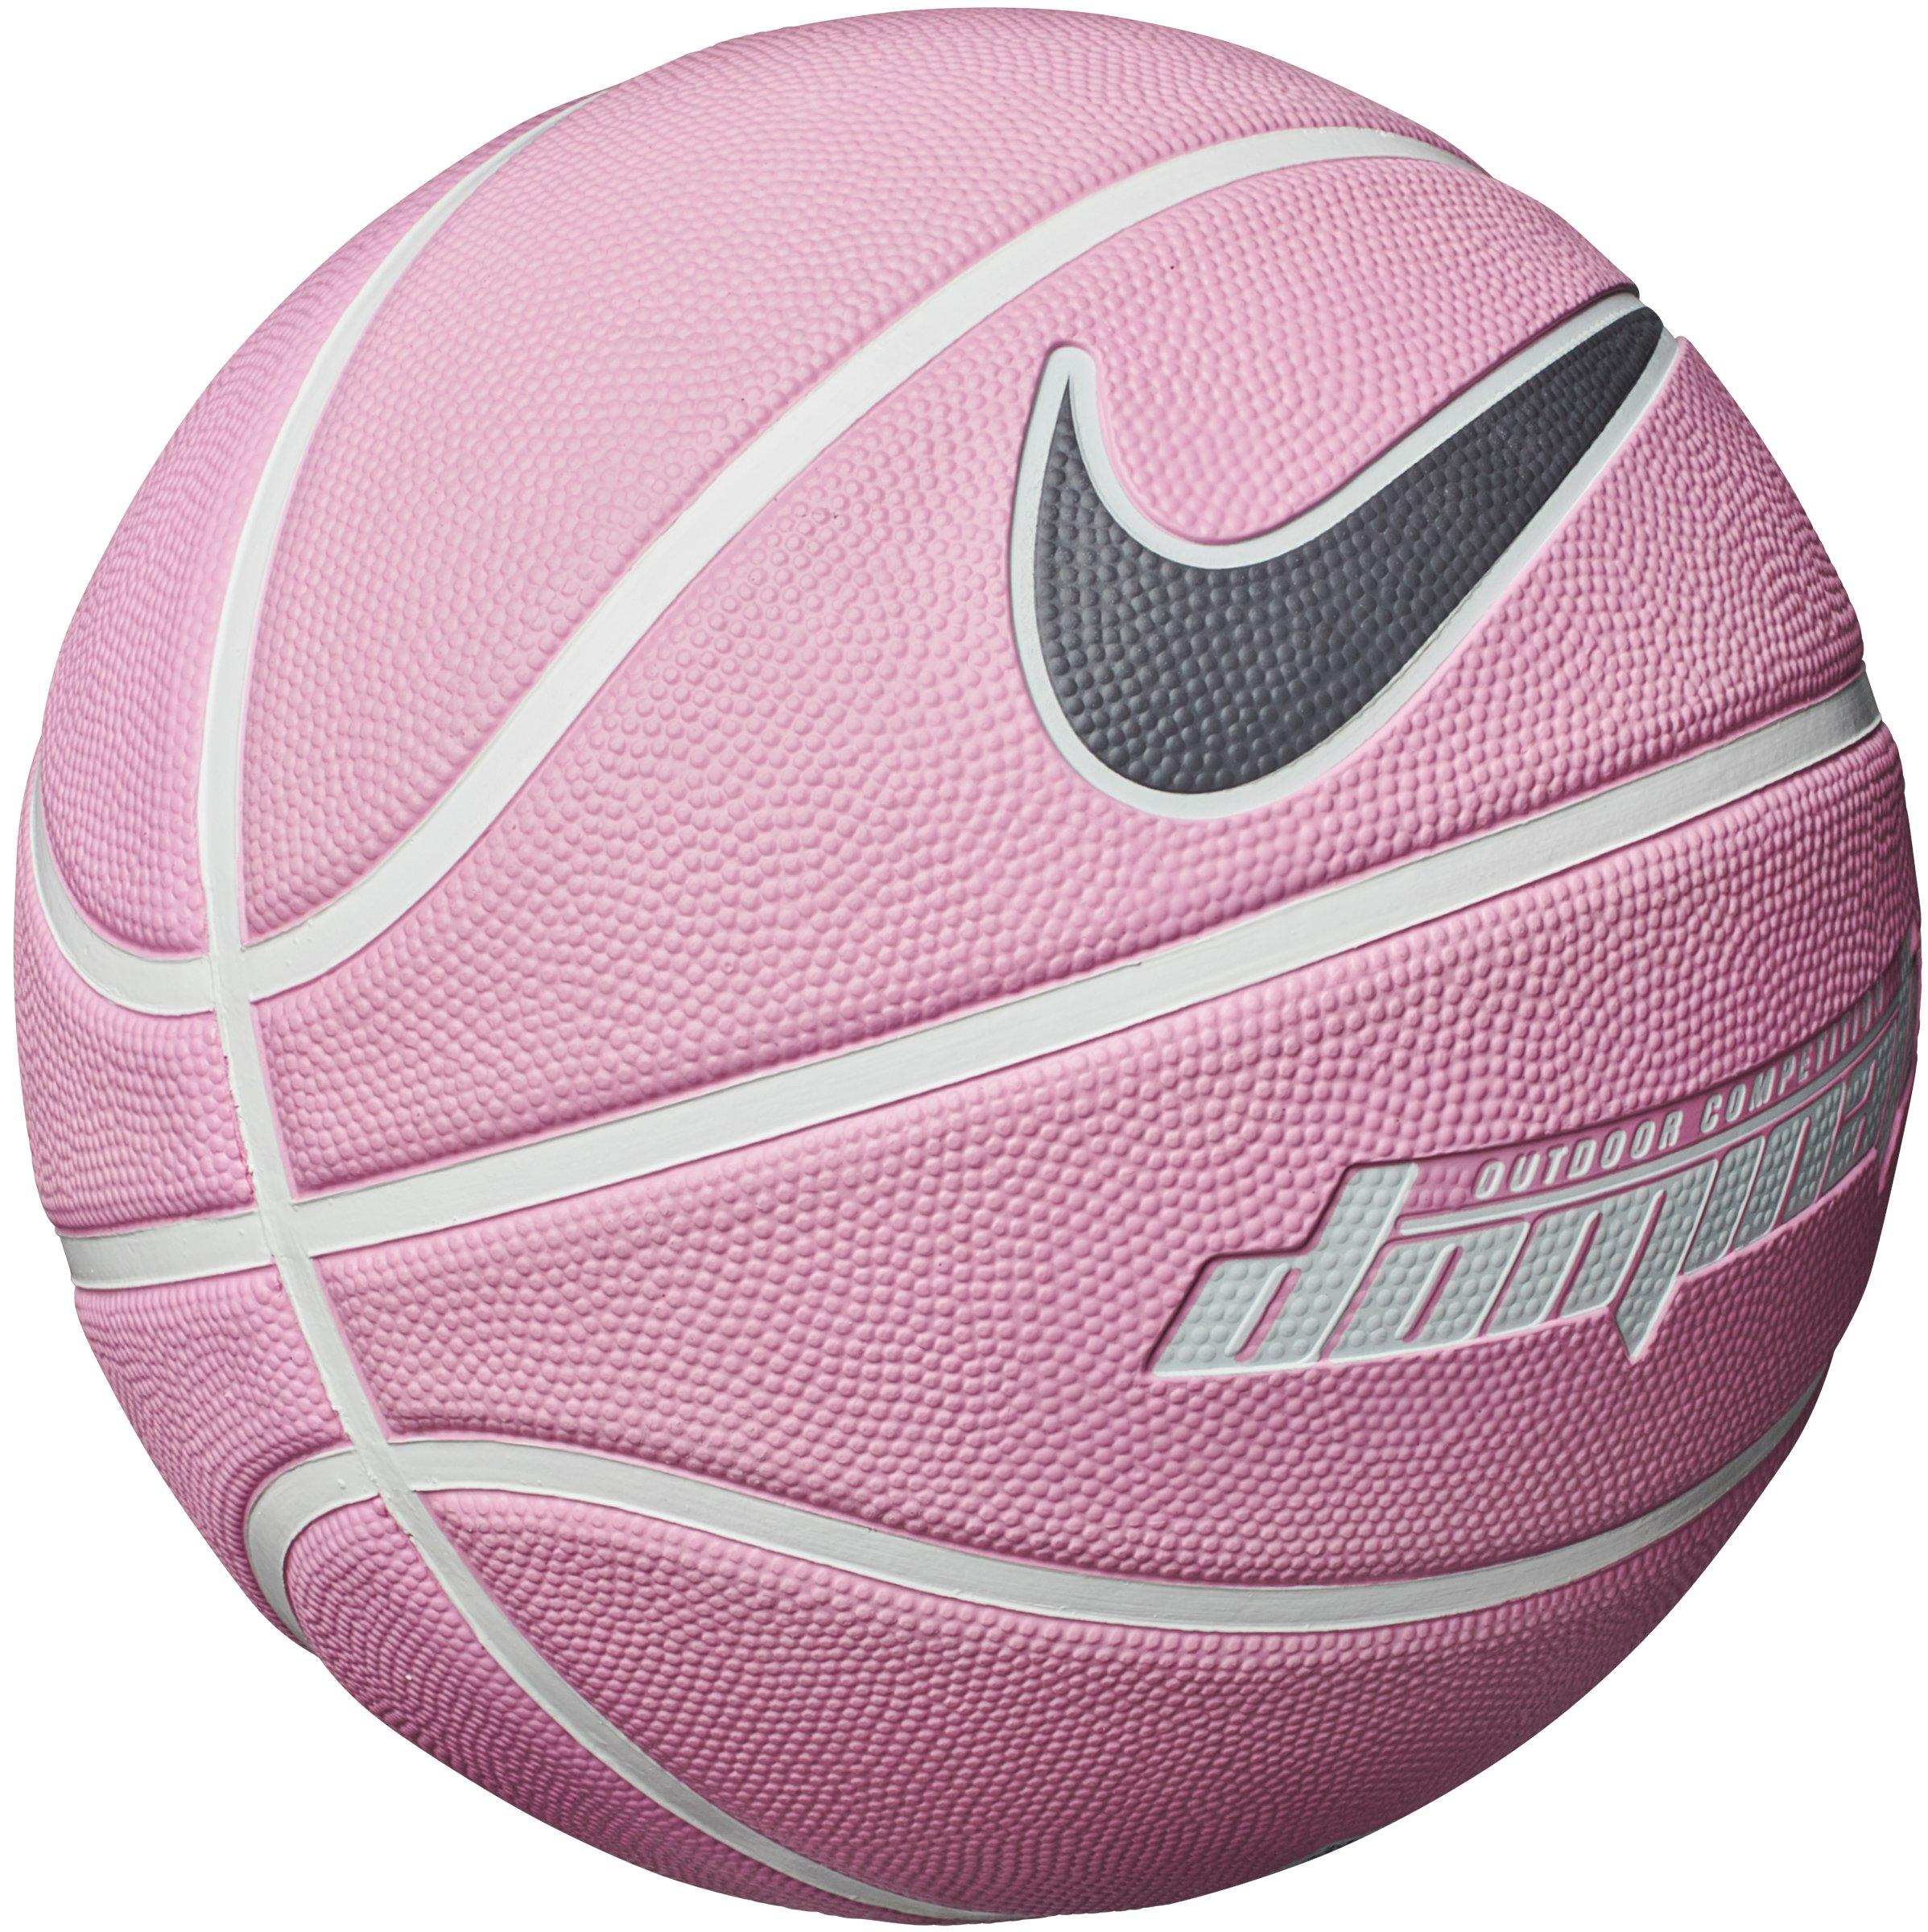 nike pink basketball ball